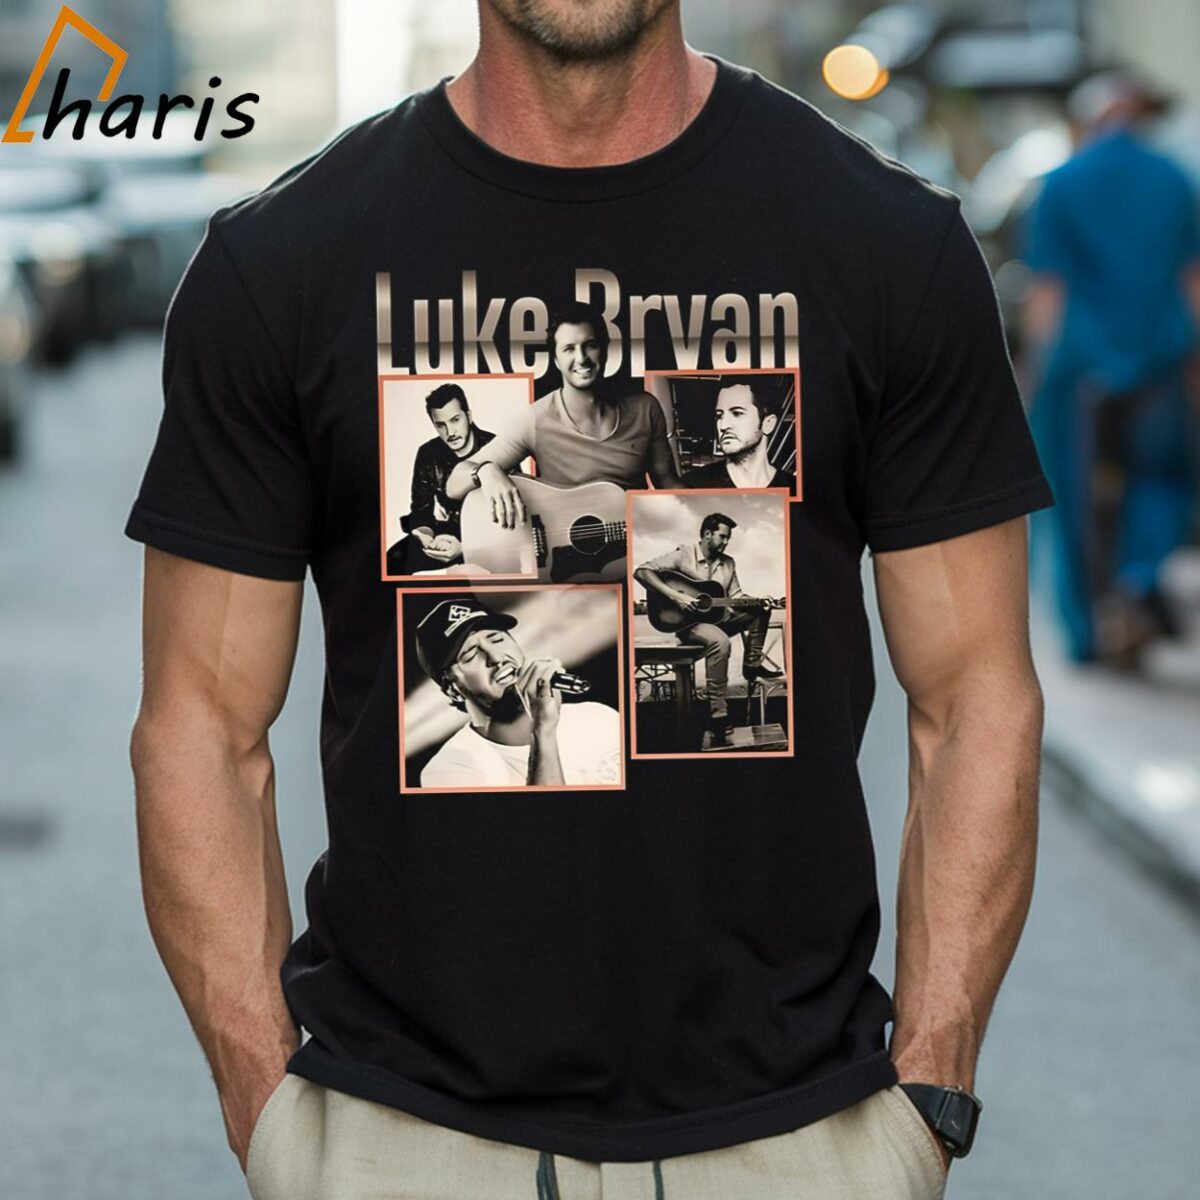 Luke Bryan Raised Up Right Tour T shirt 1 Shirt